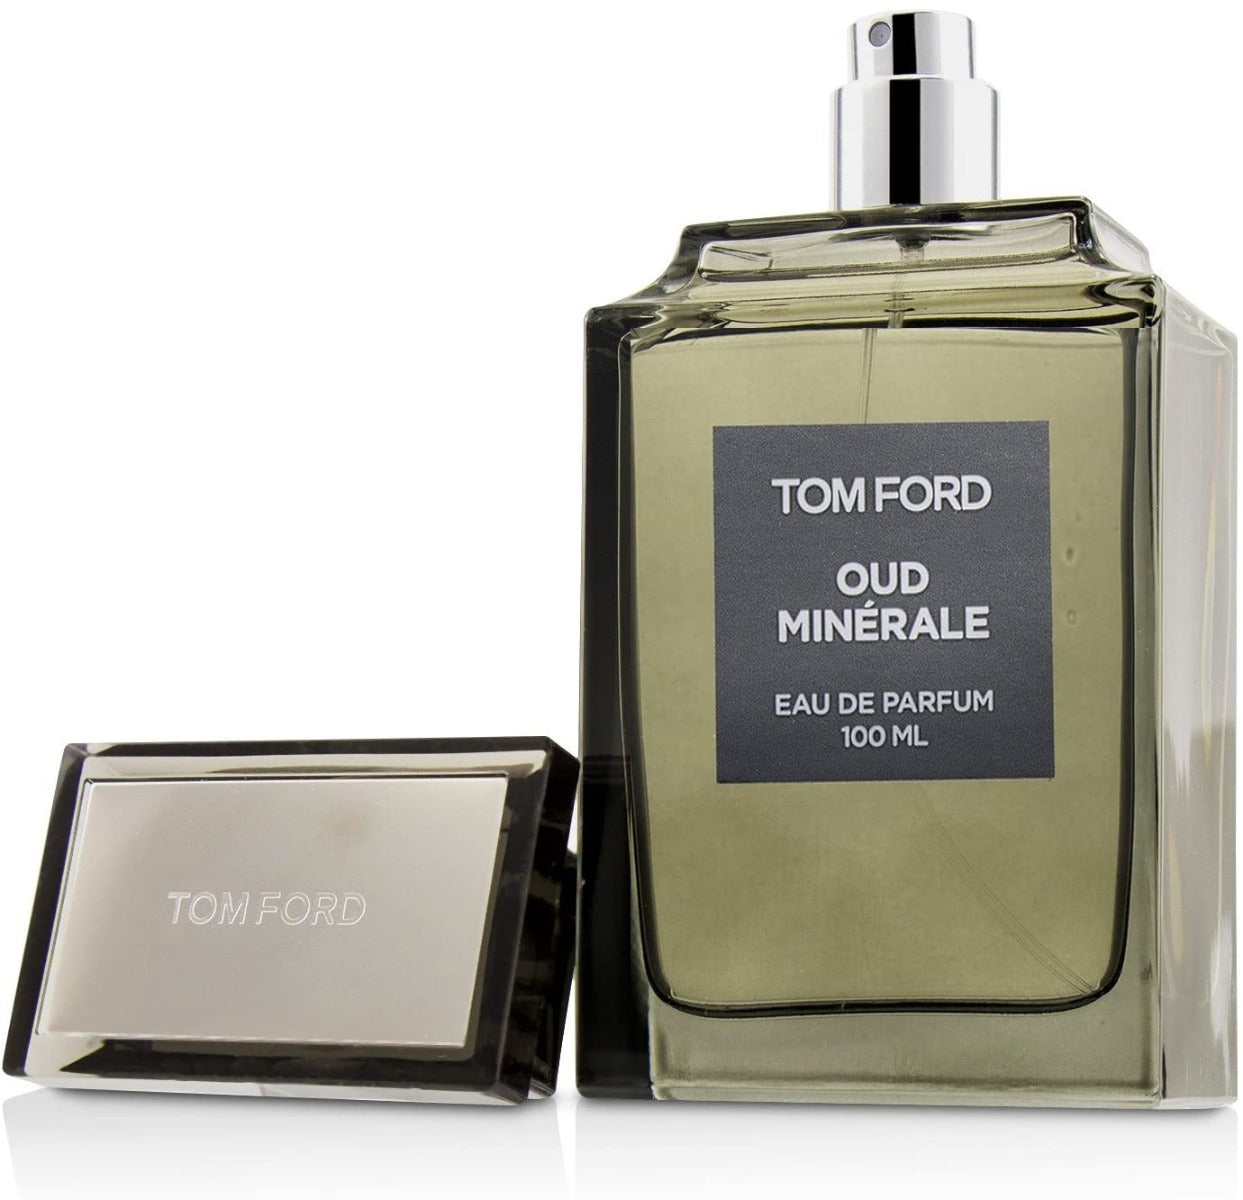 TOM FORD OUD MINERALE UNISEX EDP 100 ml - samawa perfumes 